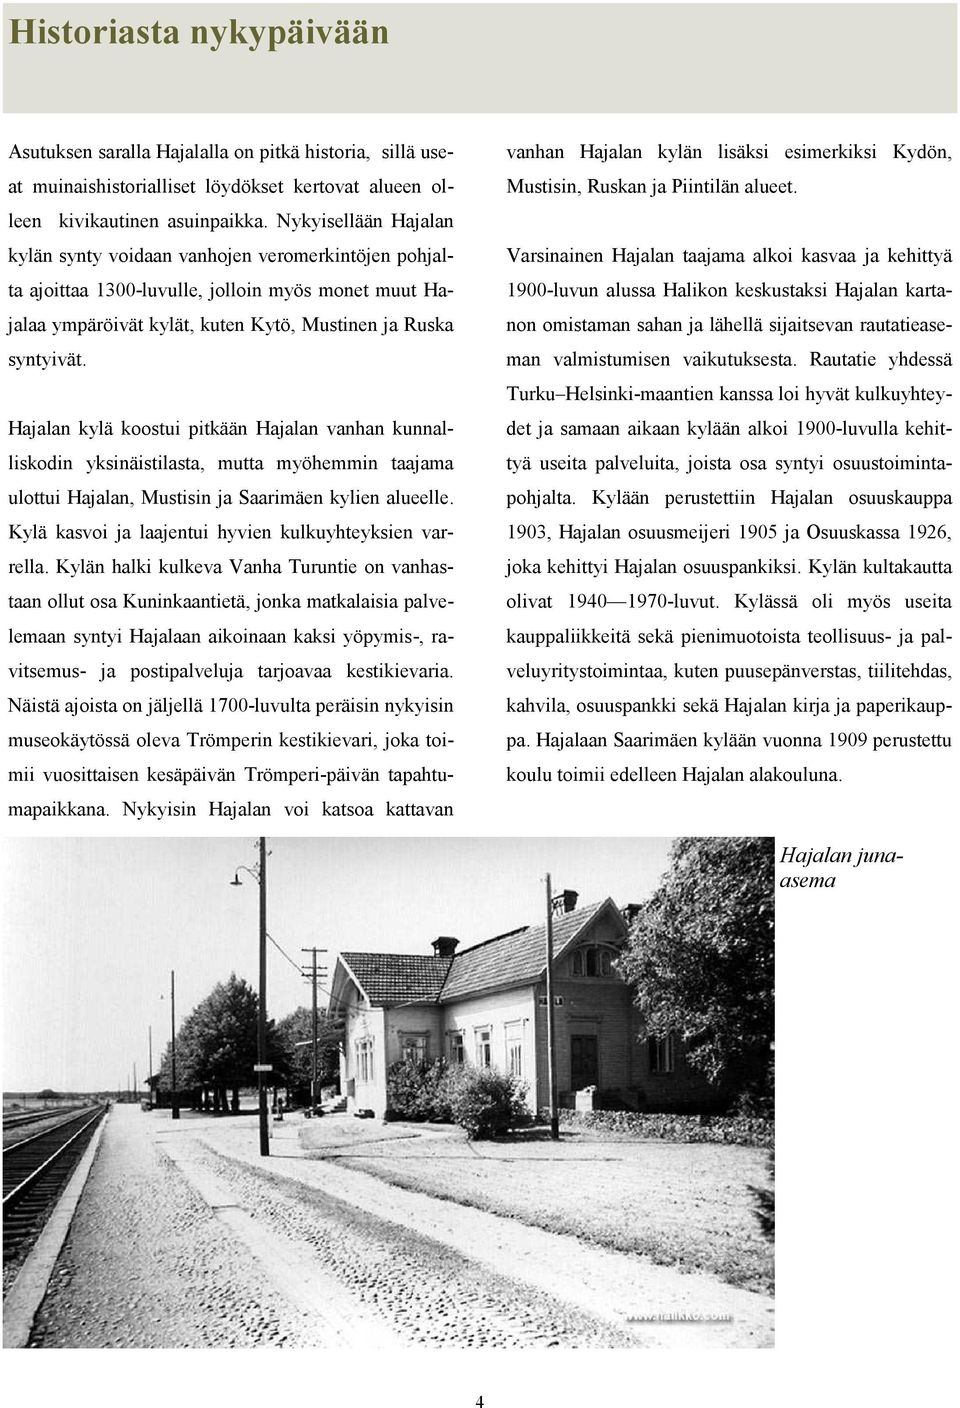 Hajalan kylä koostui pitkään Hajalan vanhan kunnalliskodin yksinäistilasta, mutta myöhemmin taajama ulottui Hajalan, Mustisin ja Saarimäen kylien alueelle.